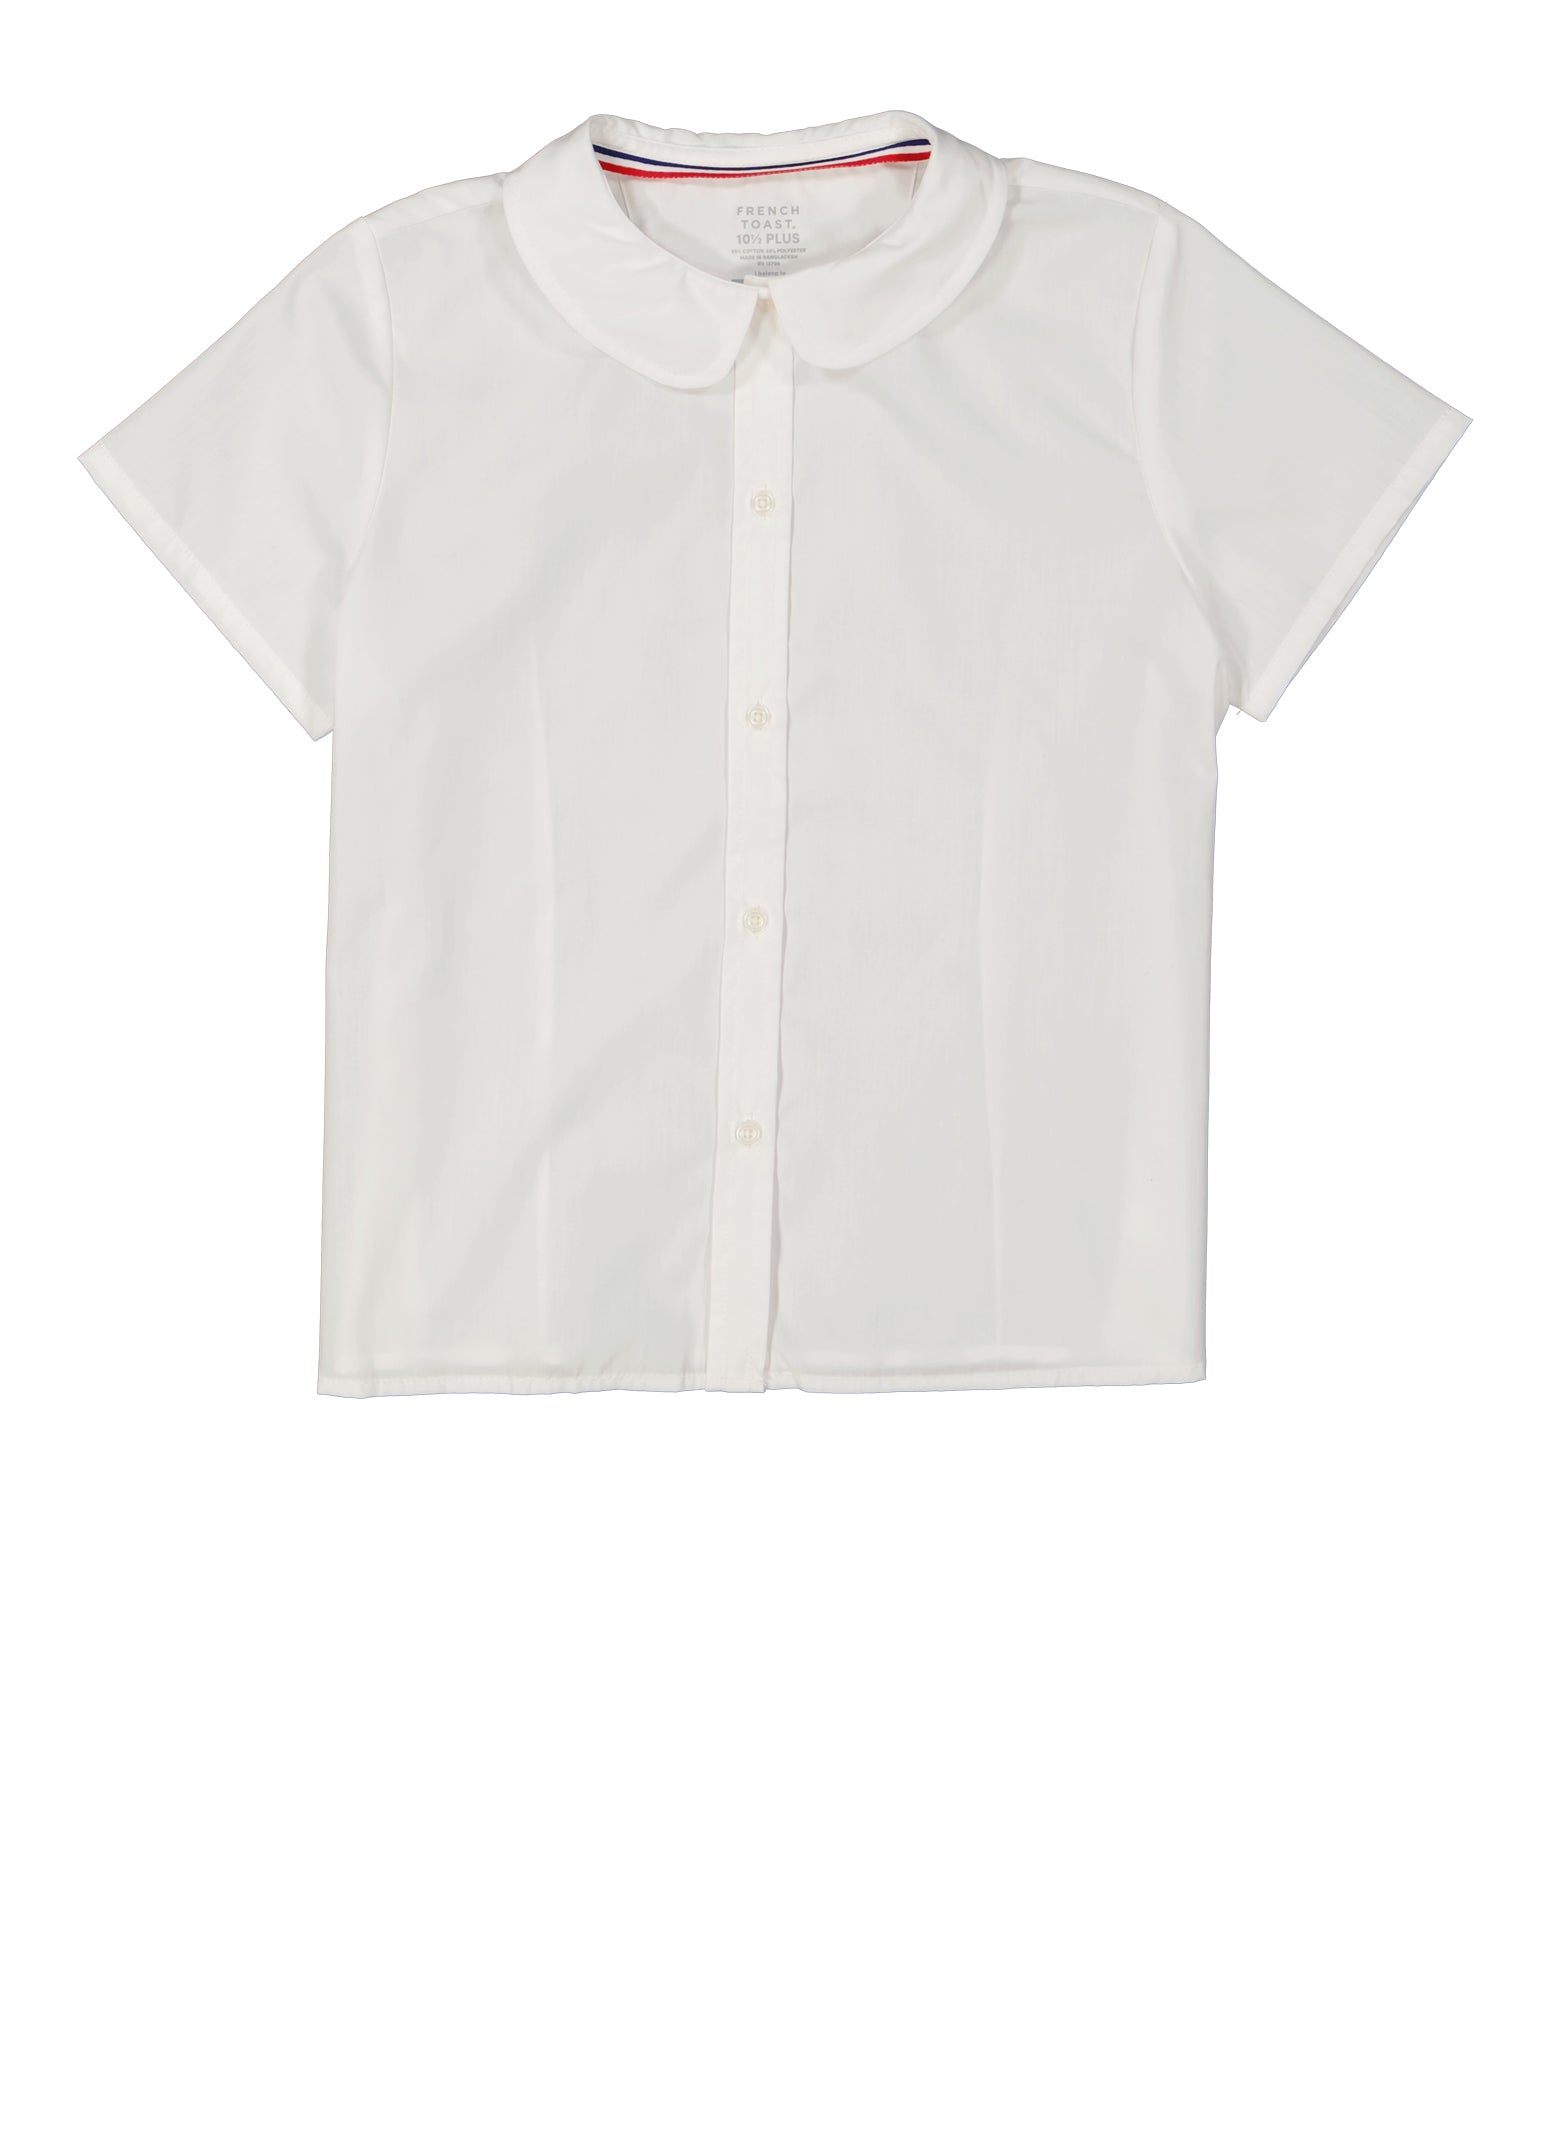 Cotton Shirt with Peter Pan Collar - Black - Ladies